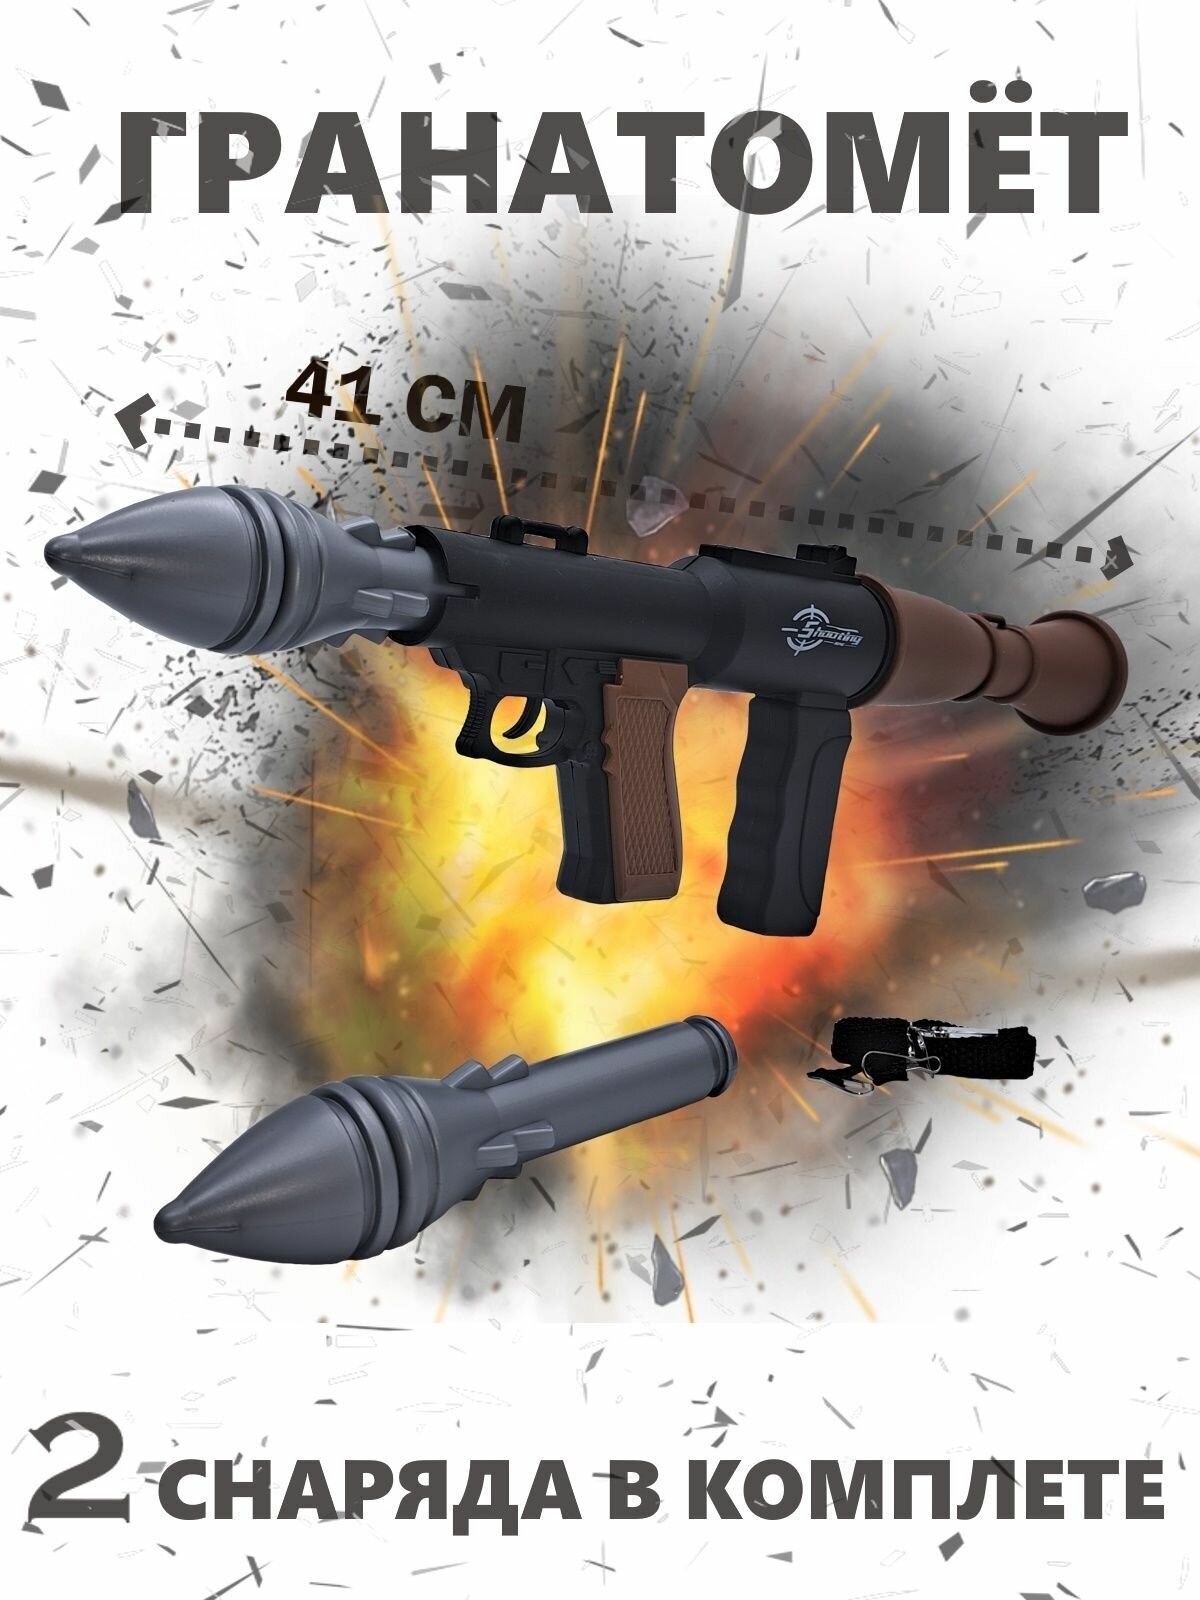 Игрушка детская "Гранатомёт", 2 снаряда в комплекте, ремешок